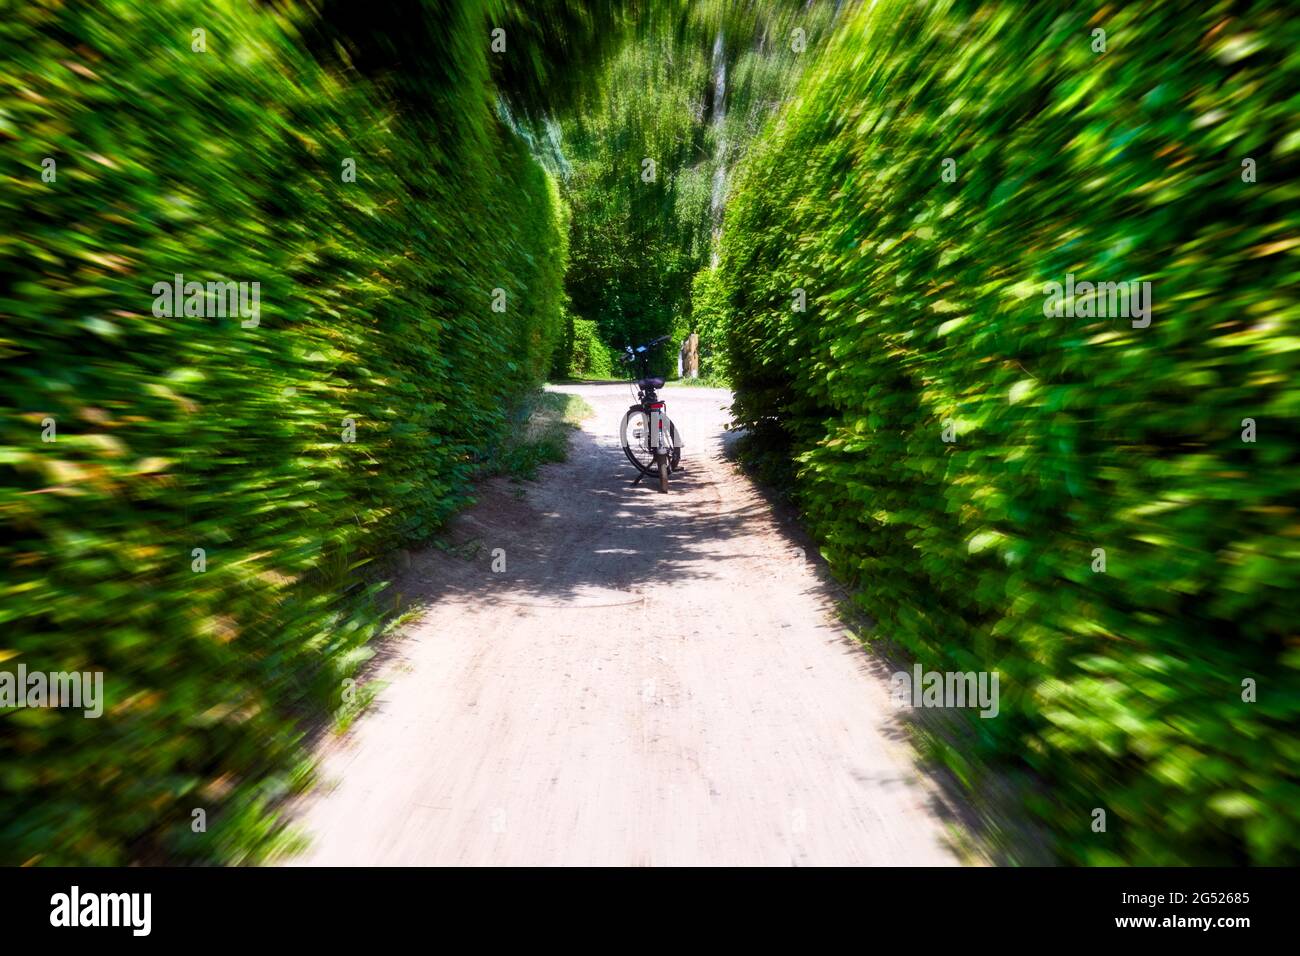 Abstraktes Bild mit Zoom-Effekt eines Fahrrads, das am Ende eines dicht bewachsenen grünen Hohlweges steht, zentrale Perspektive mit Bewegungsunschärfe Stockfoto